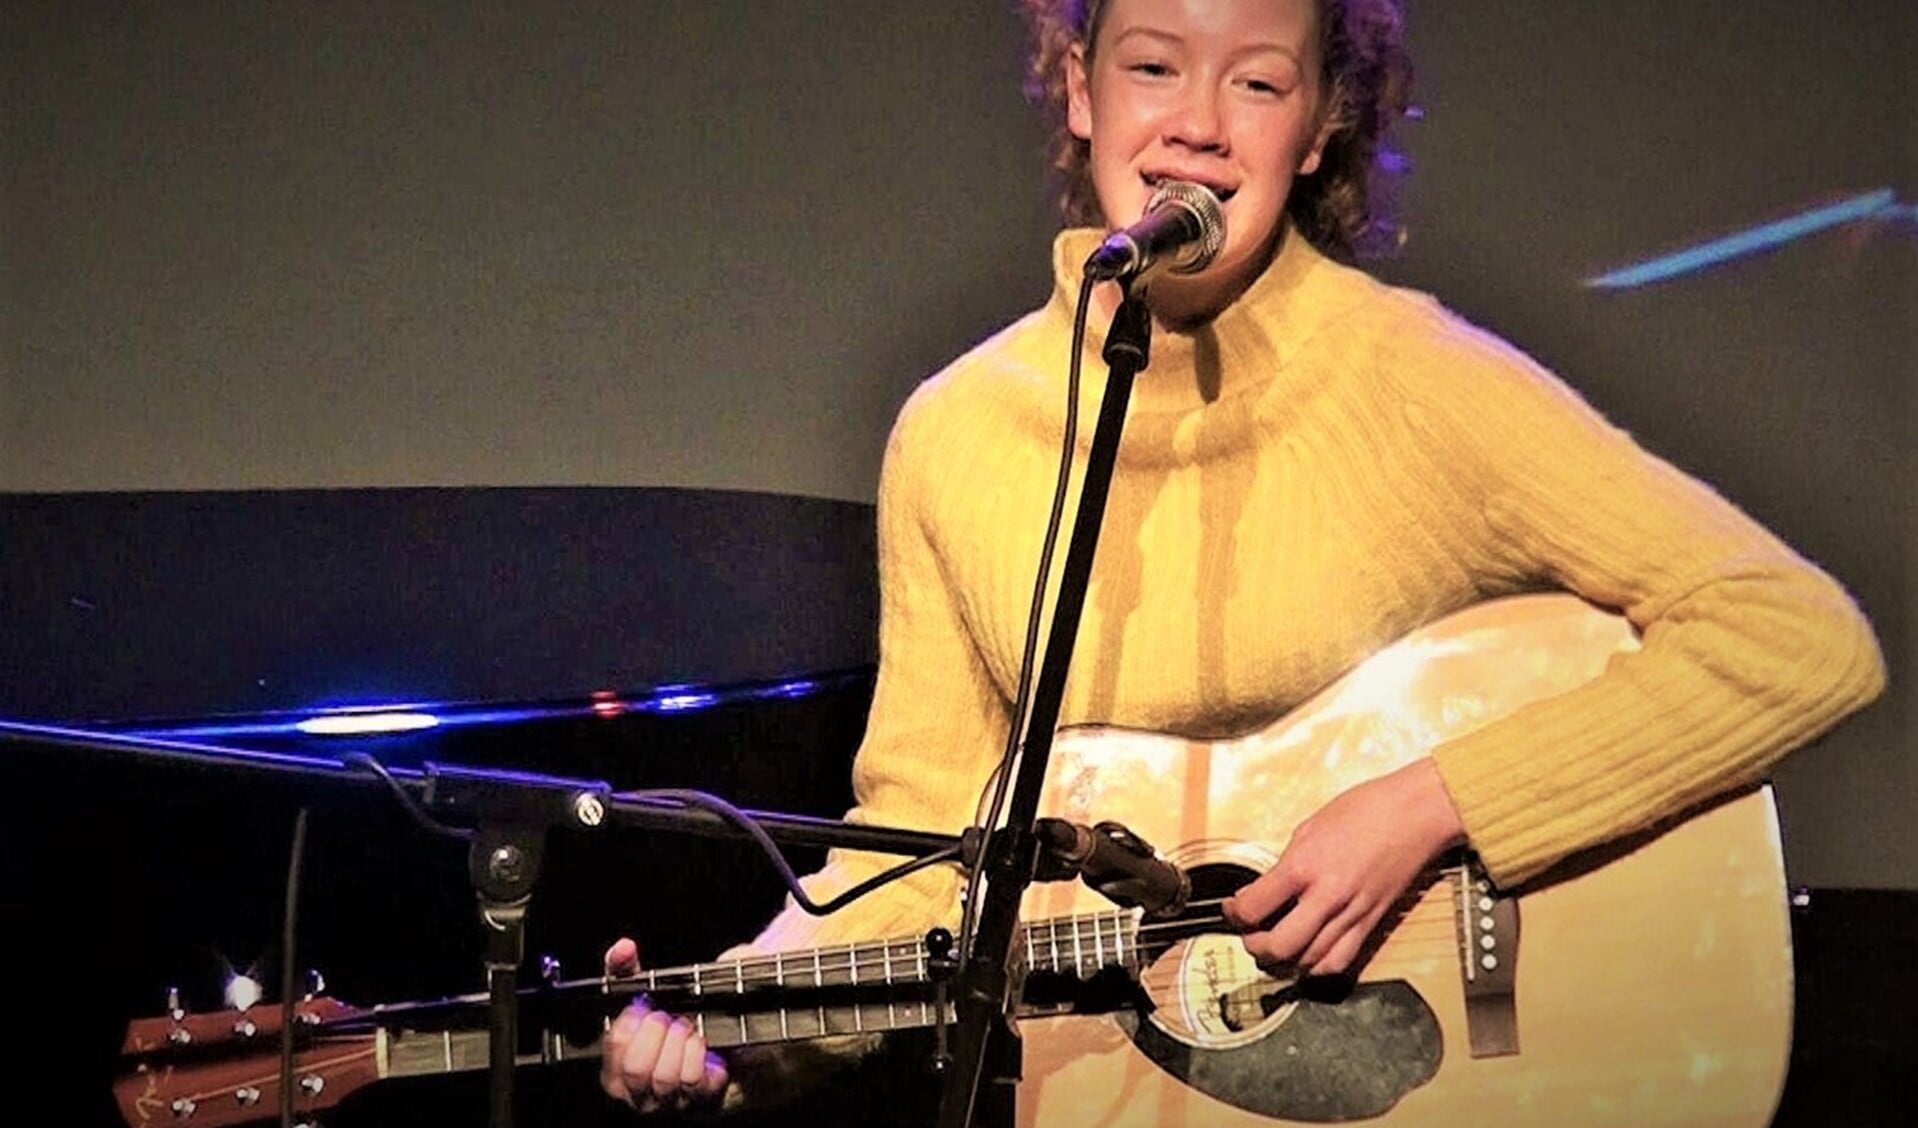 De 16-jarige Julia Vos won in de groep tot 21 jaar met haar zang, waarbij zij zichzelf begeleidde op de gitaar ( foto Dennis Simonis).